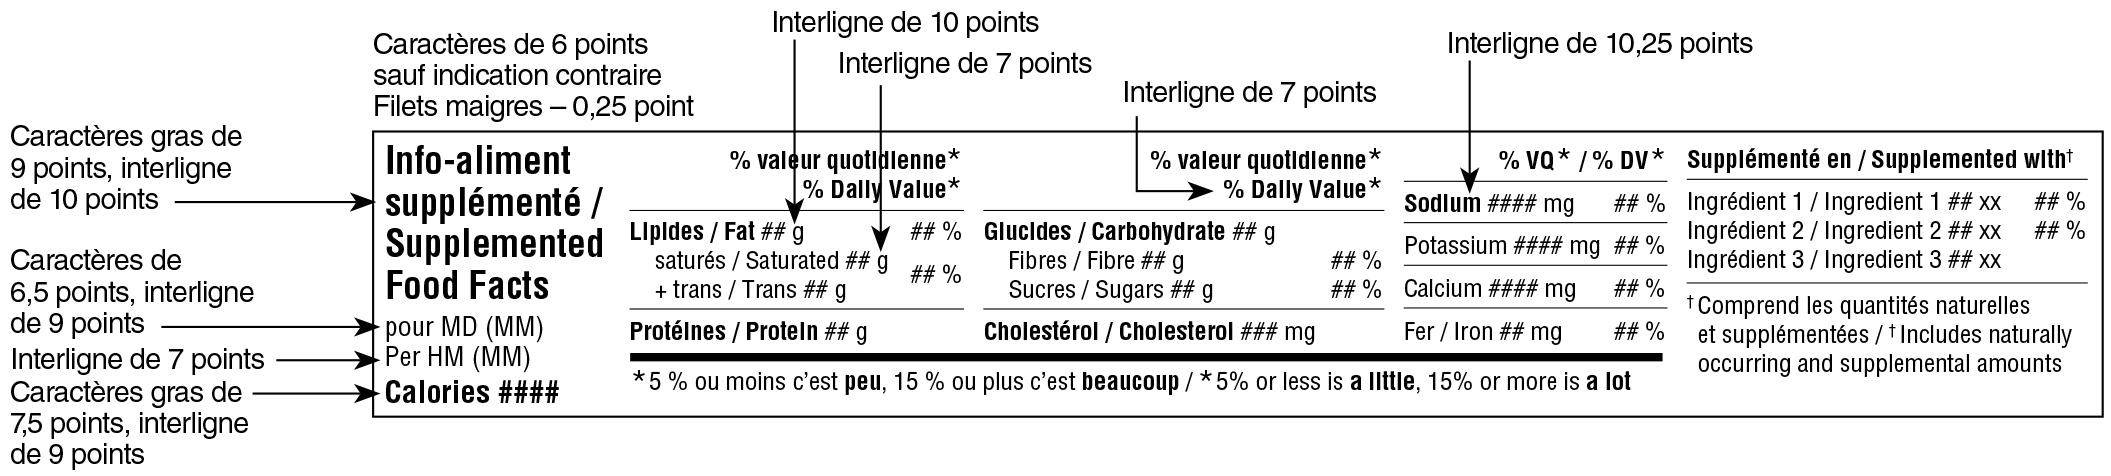 Modèle horizontal bilingue du tableau des renseignements sur les aliments supplémentés avec indications. Version texte ci-dessous.